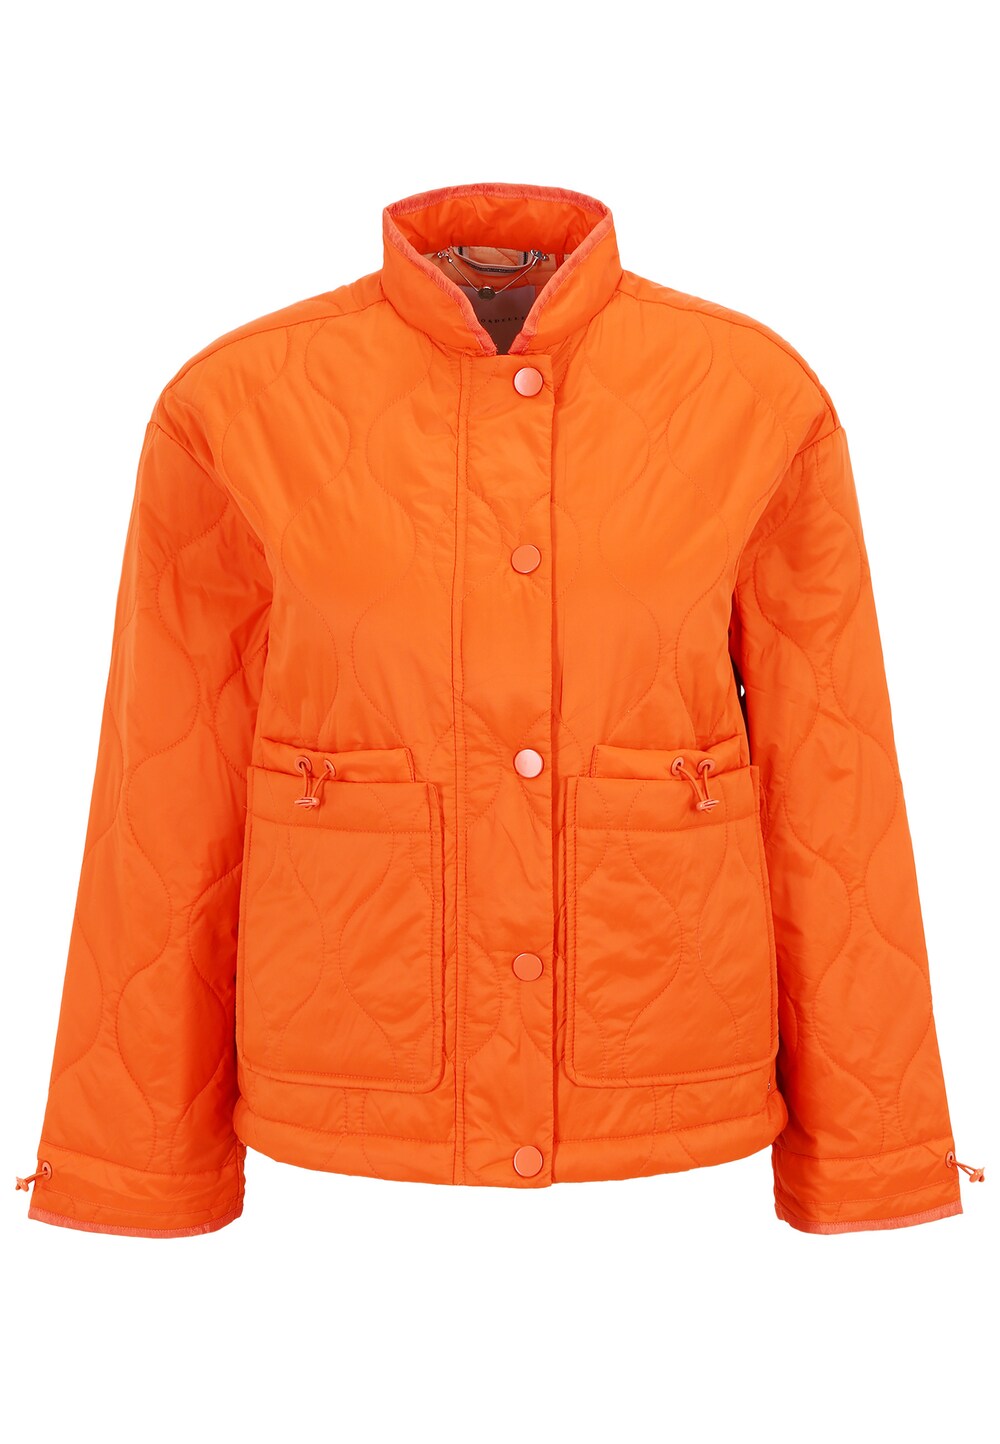 свитер куна rino Межсезонная куртка Rino & Pelle Buena, апельсин